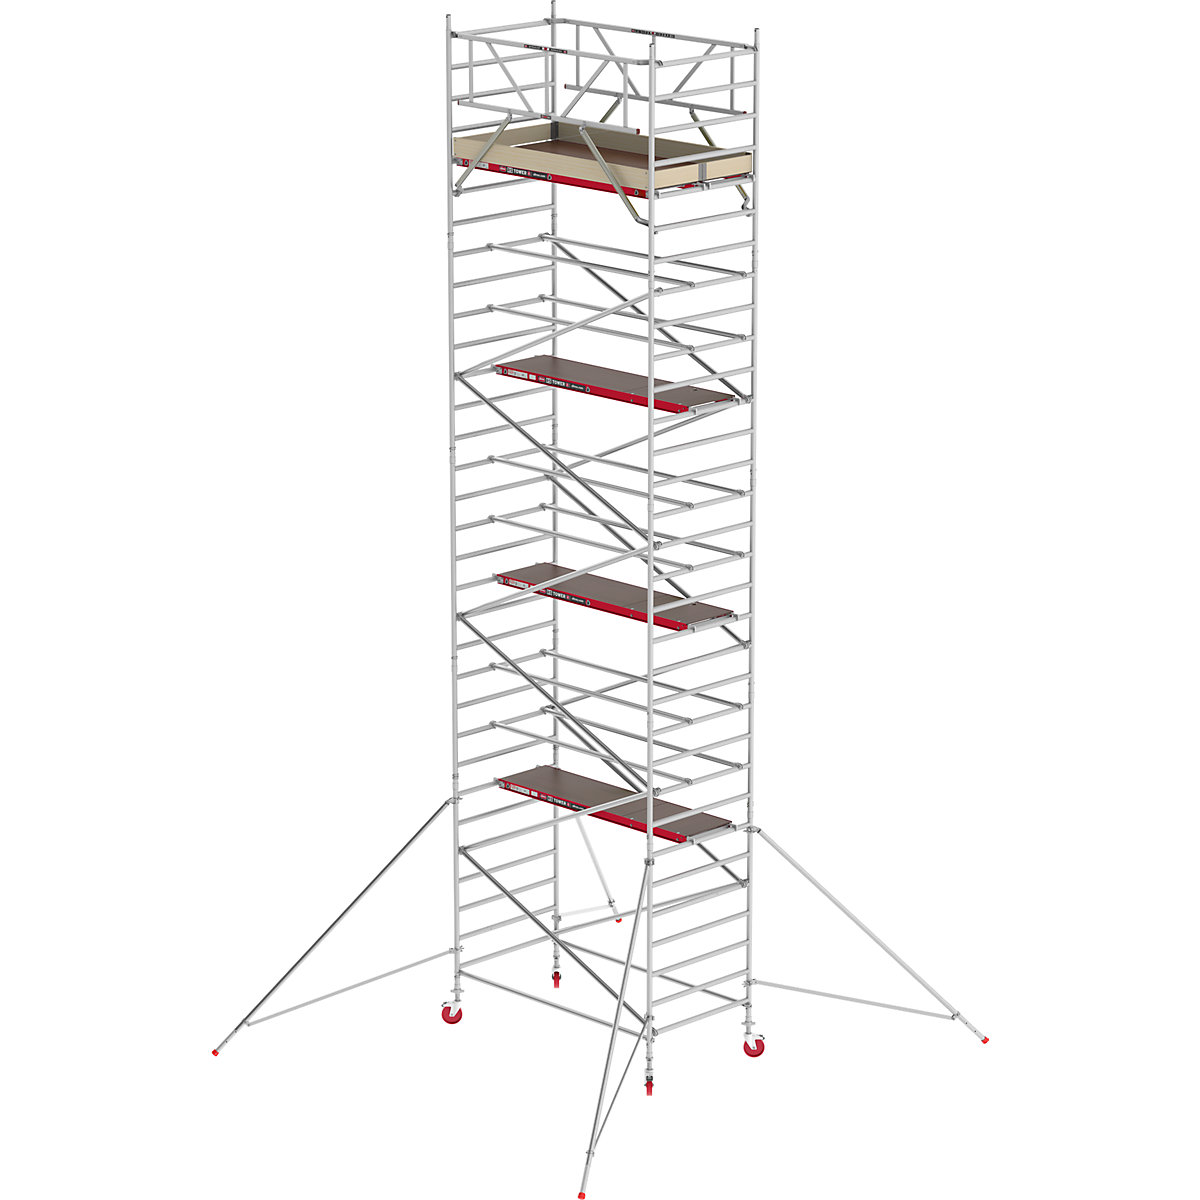 Fahrgerüst RS TOWER 42 breit Altrex, Holzplattform, Länge 1,85 m, Arbeitshöhe 10,20 m